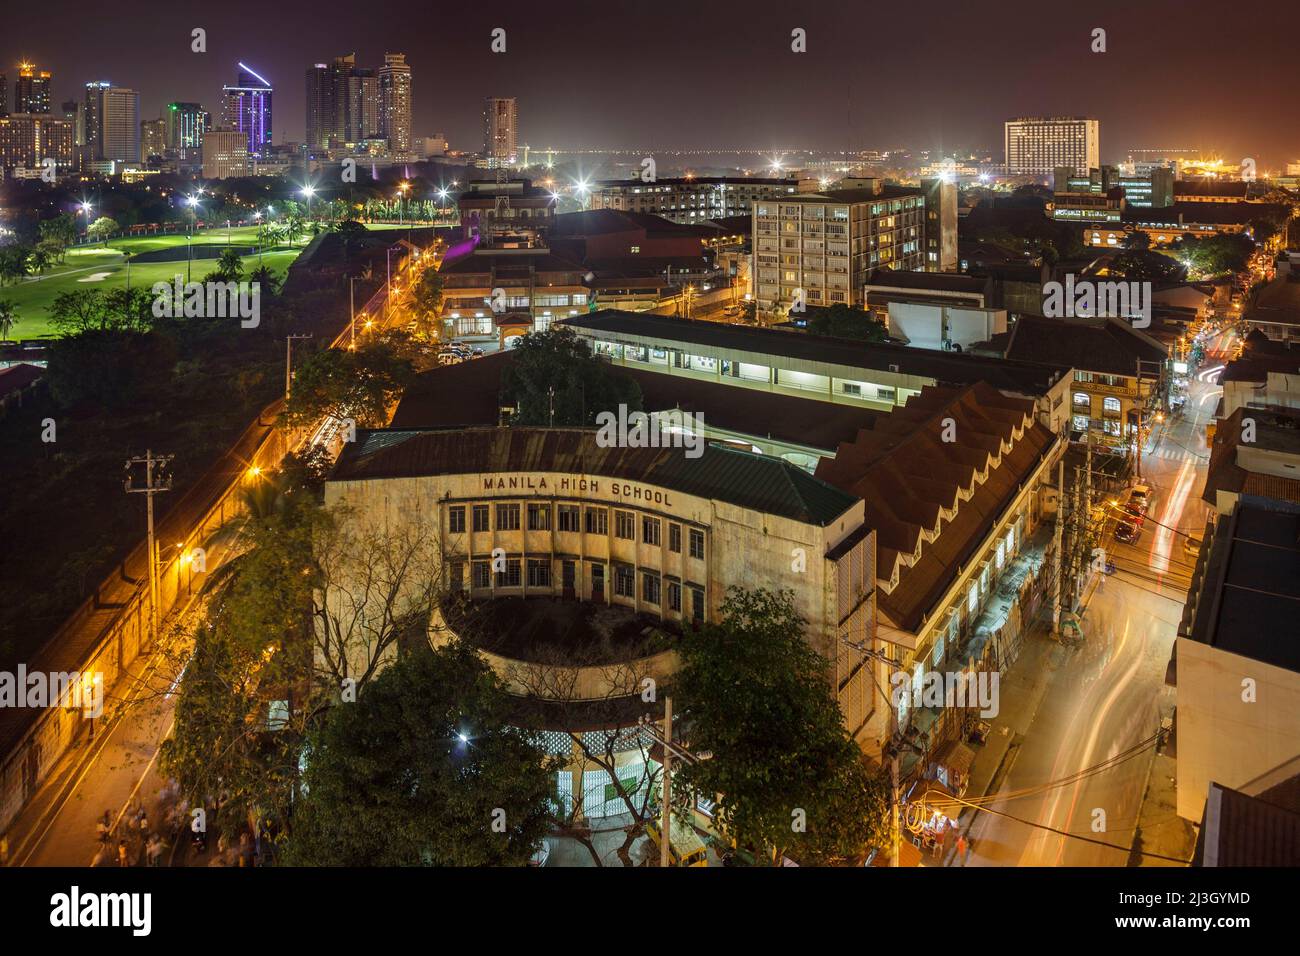 Philippines, Metro Manila, Intramuros, vue de l'hôtel Bayleaf, vue surélevée de l'école secondaire de Manille, illuminée la nuit, première école publique de Manille, ouvert en 1906 Banque D'Images